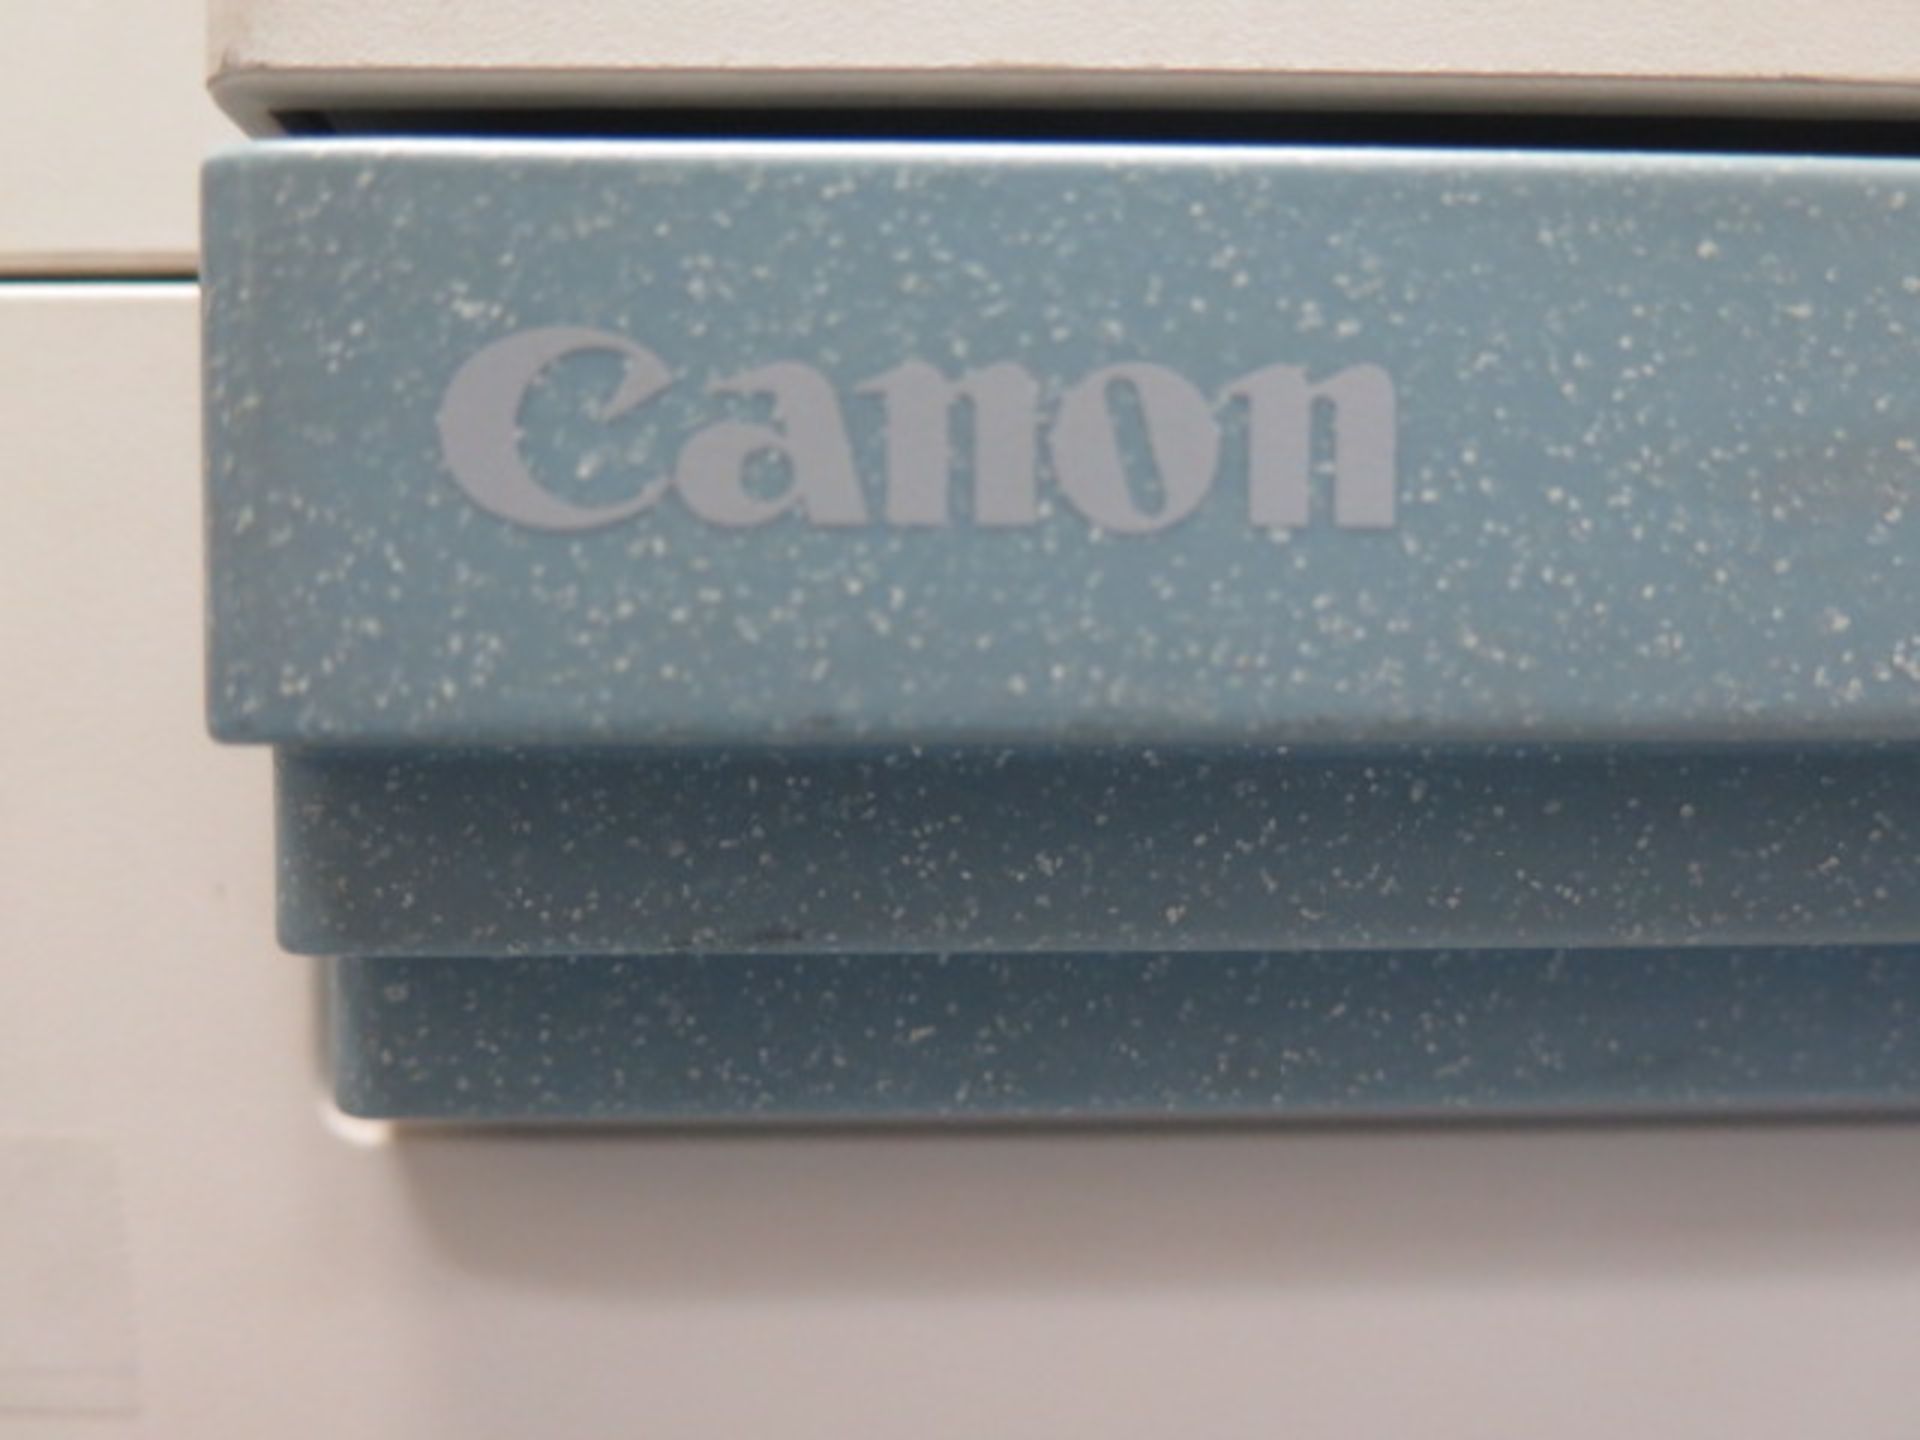 Canon PC850 Copy Machine - Image 3 of 3